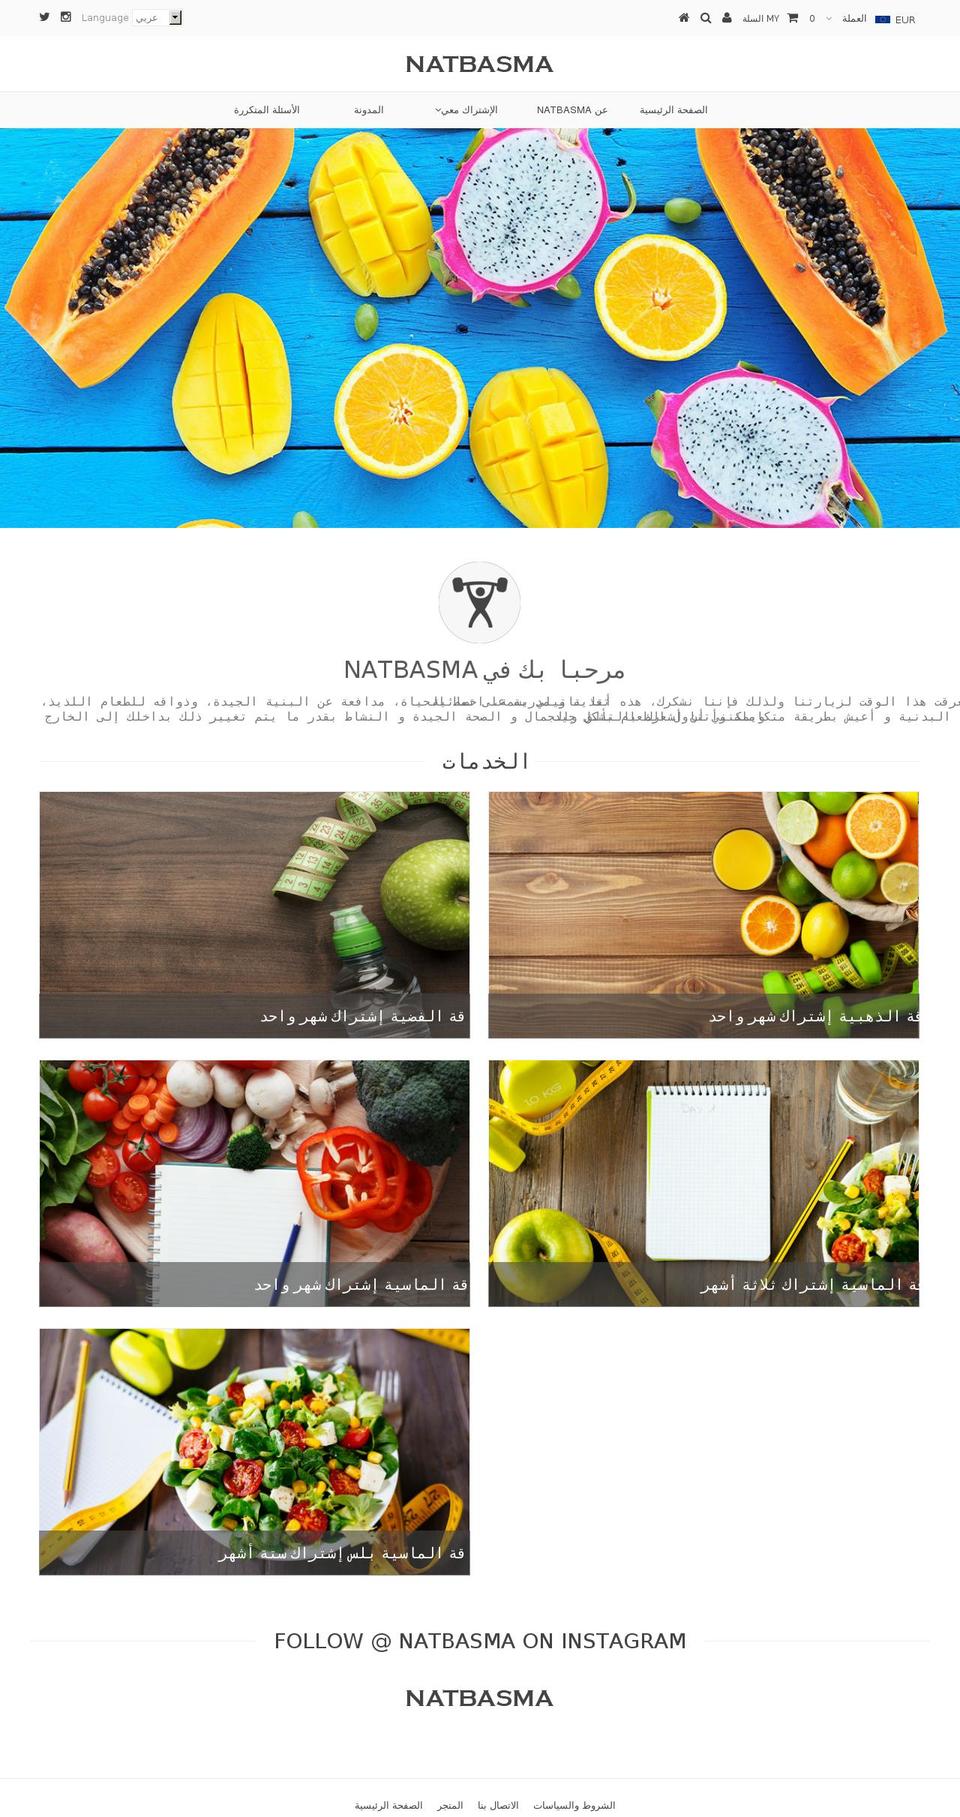 Handmade Shopify theme site example natbasma.com